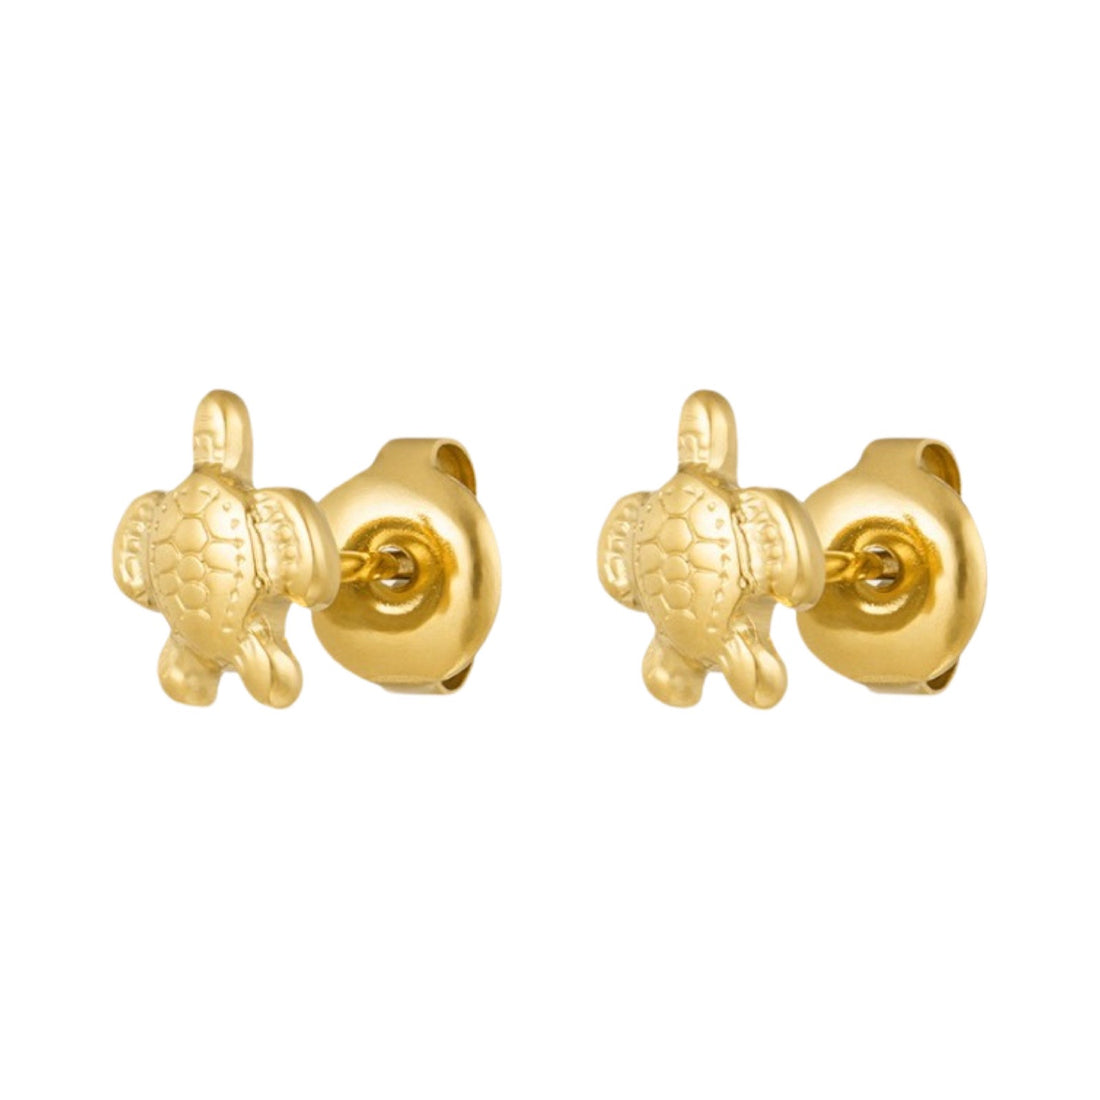 Chiralstahl-Ohrringe für Kinder: Schildkröten Gold